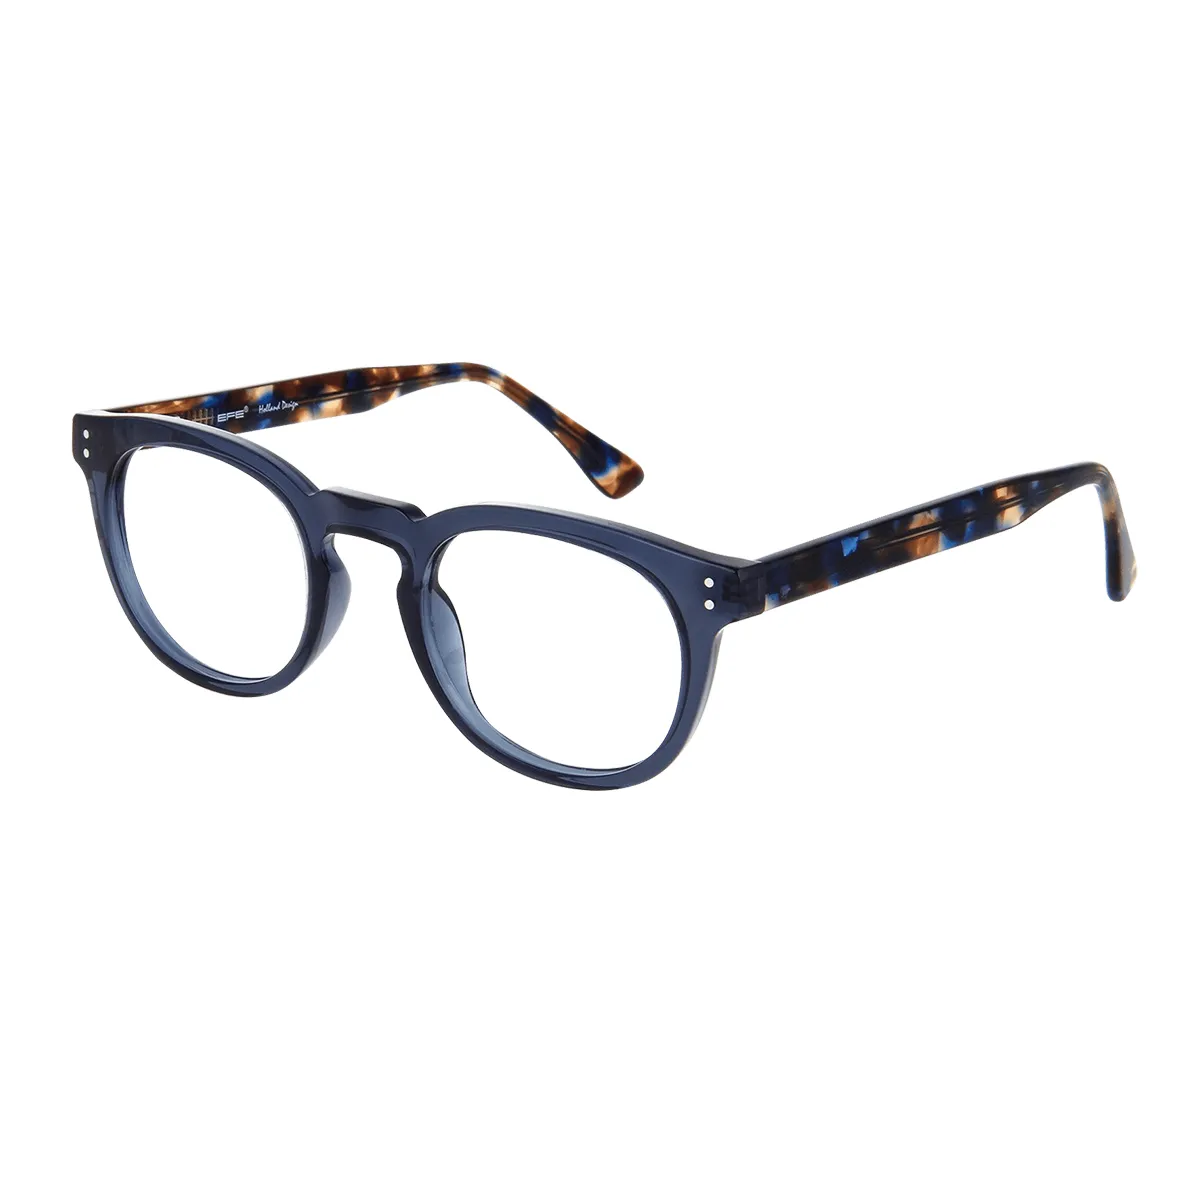 Annette - Oval Blue Glasses for Women